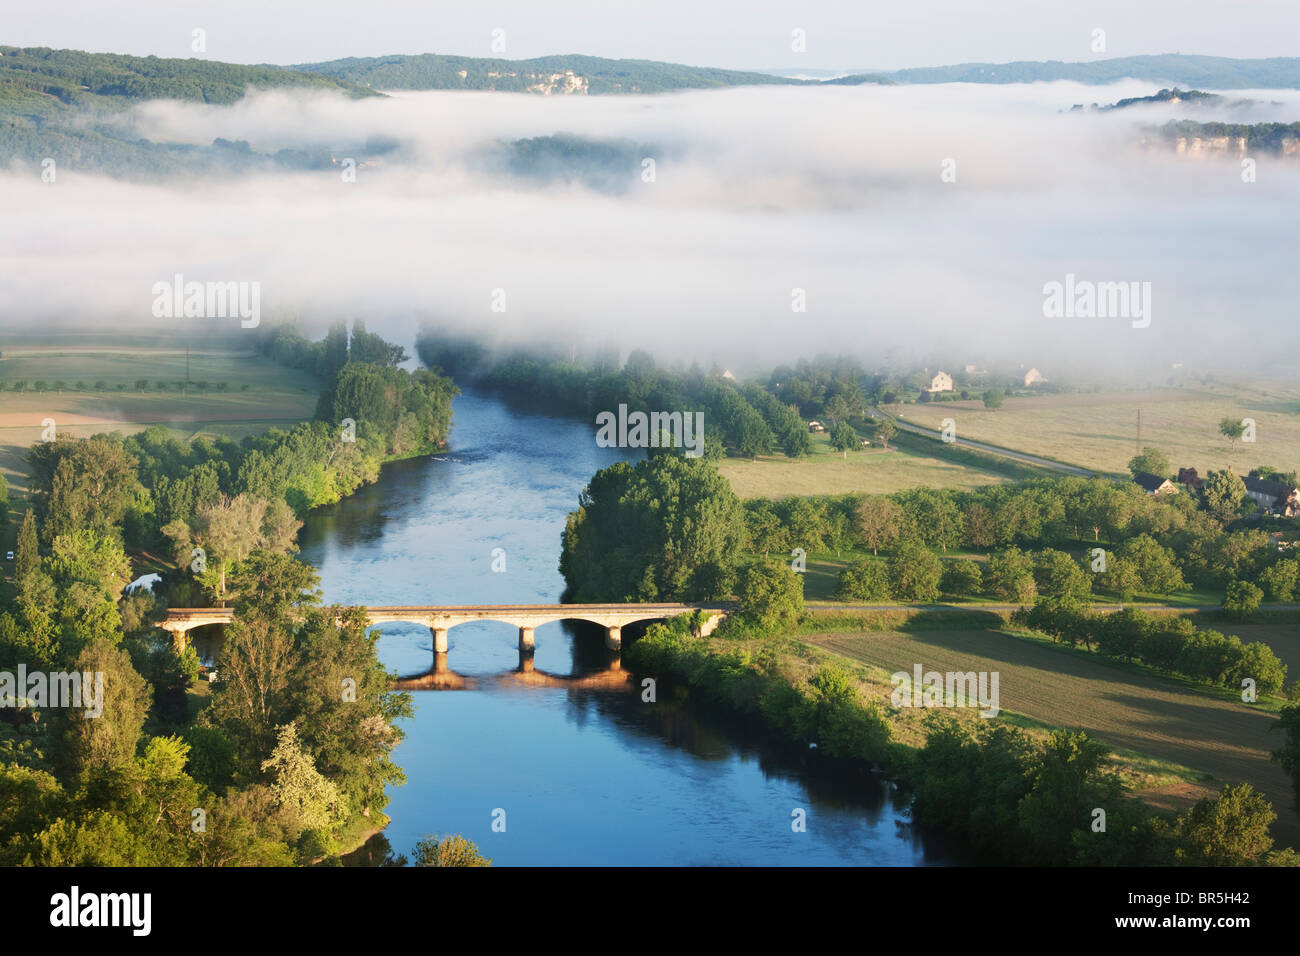 Morning mist over the river Dordogne; France Stock Photo